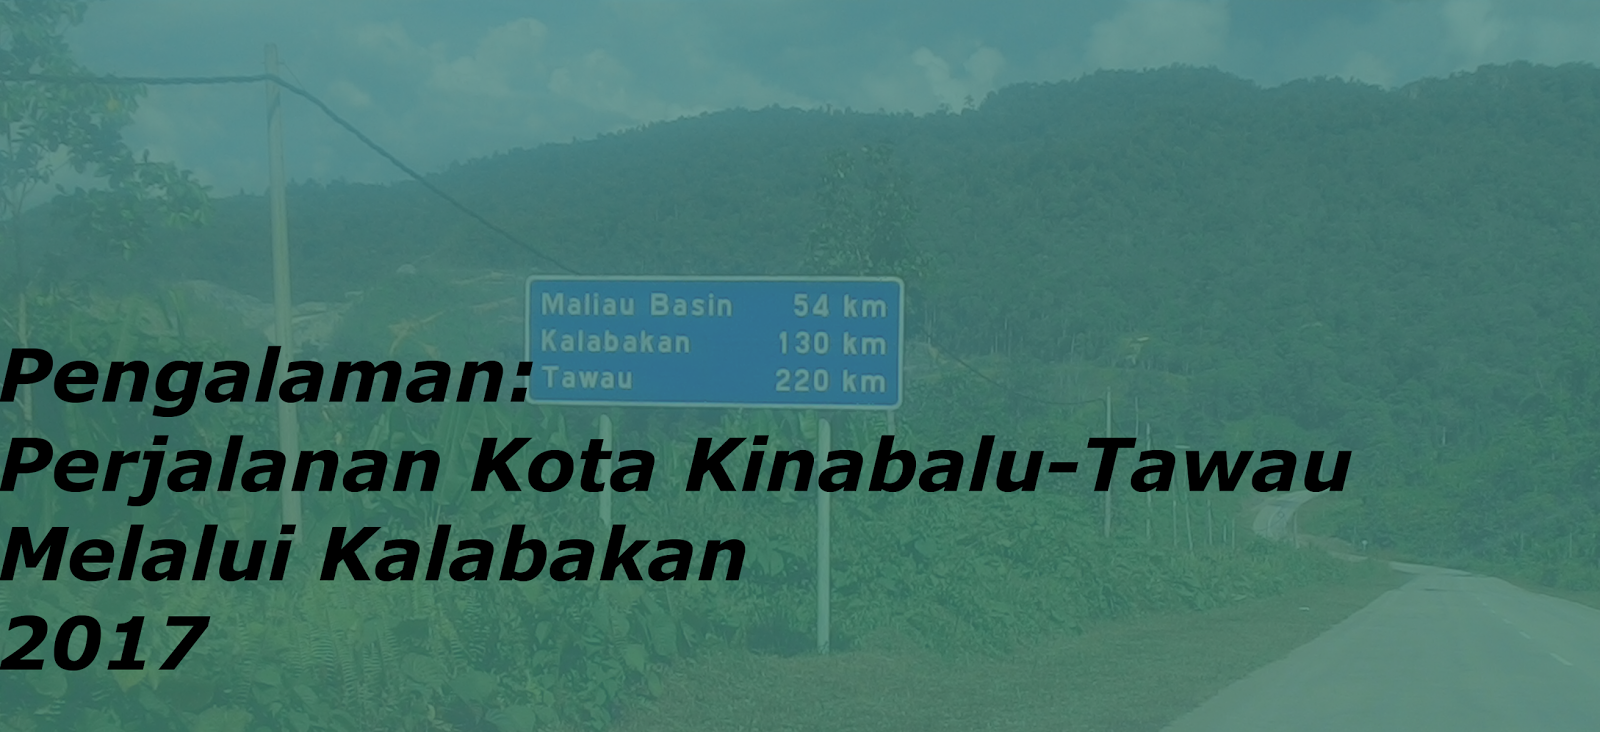 Pengalaman: Perjalanan Kota Kinabalu-Tawau Melalui 